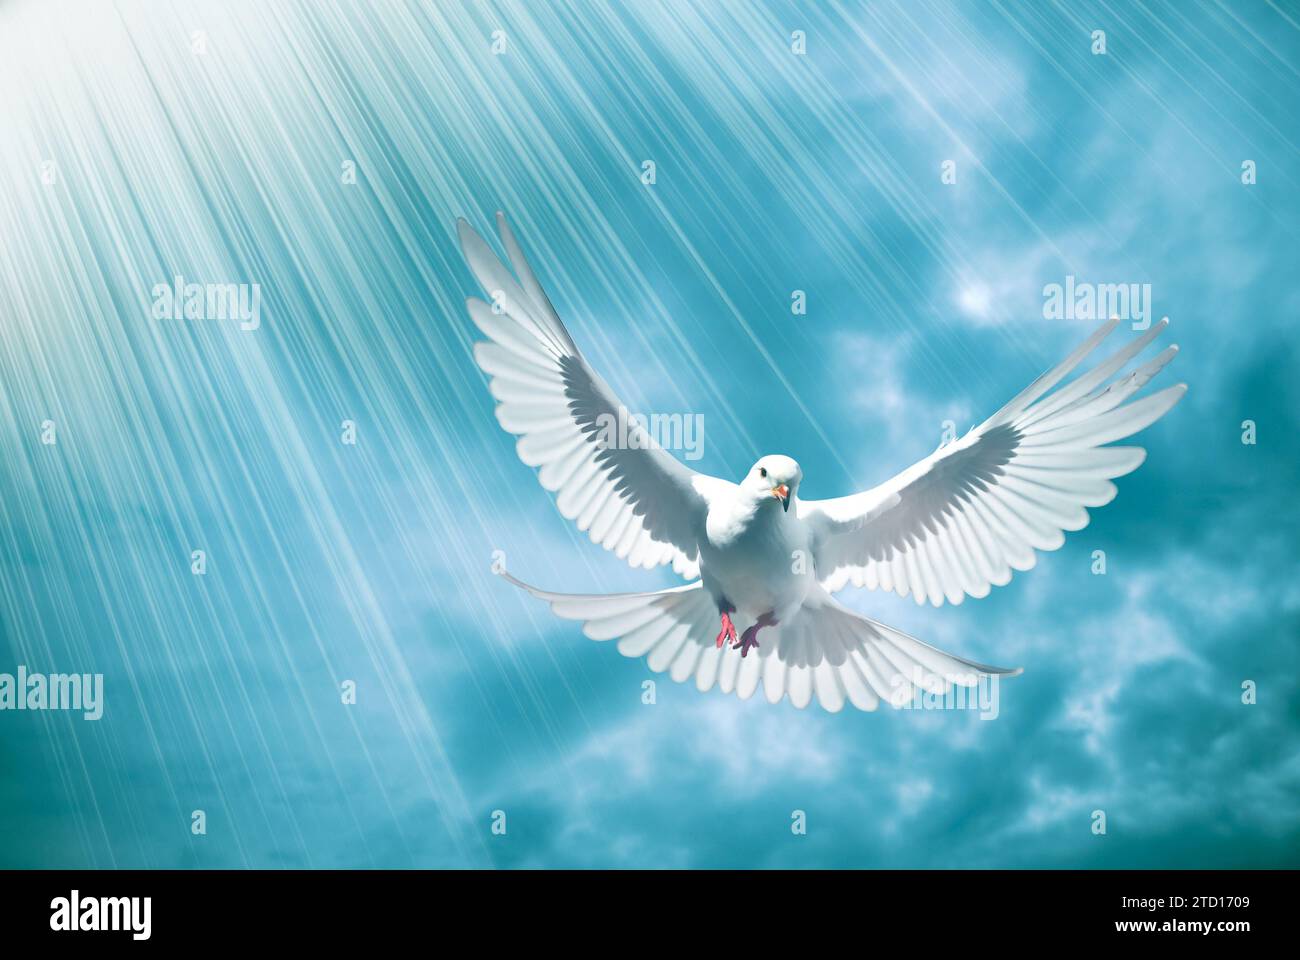 colomba bianca di pace e amore con raggi divini di luce Foto Stock